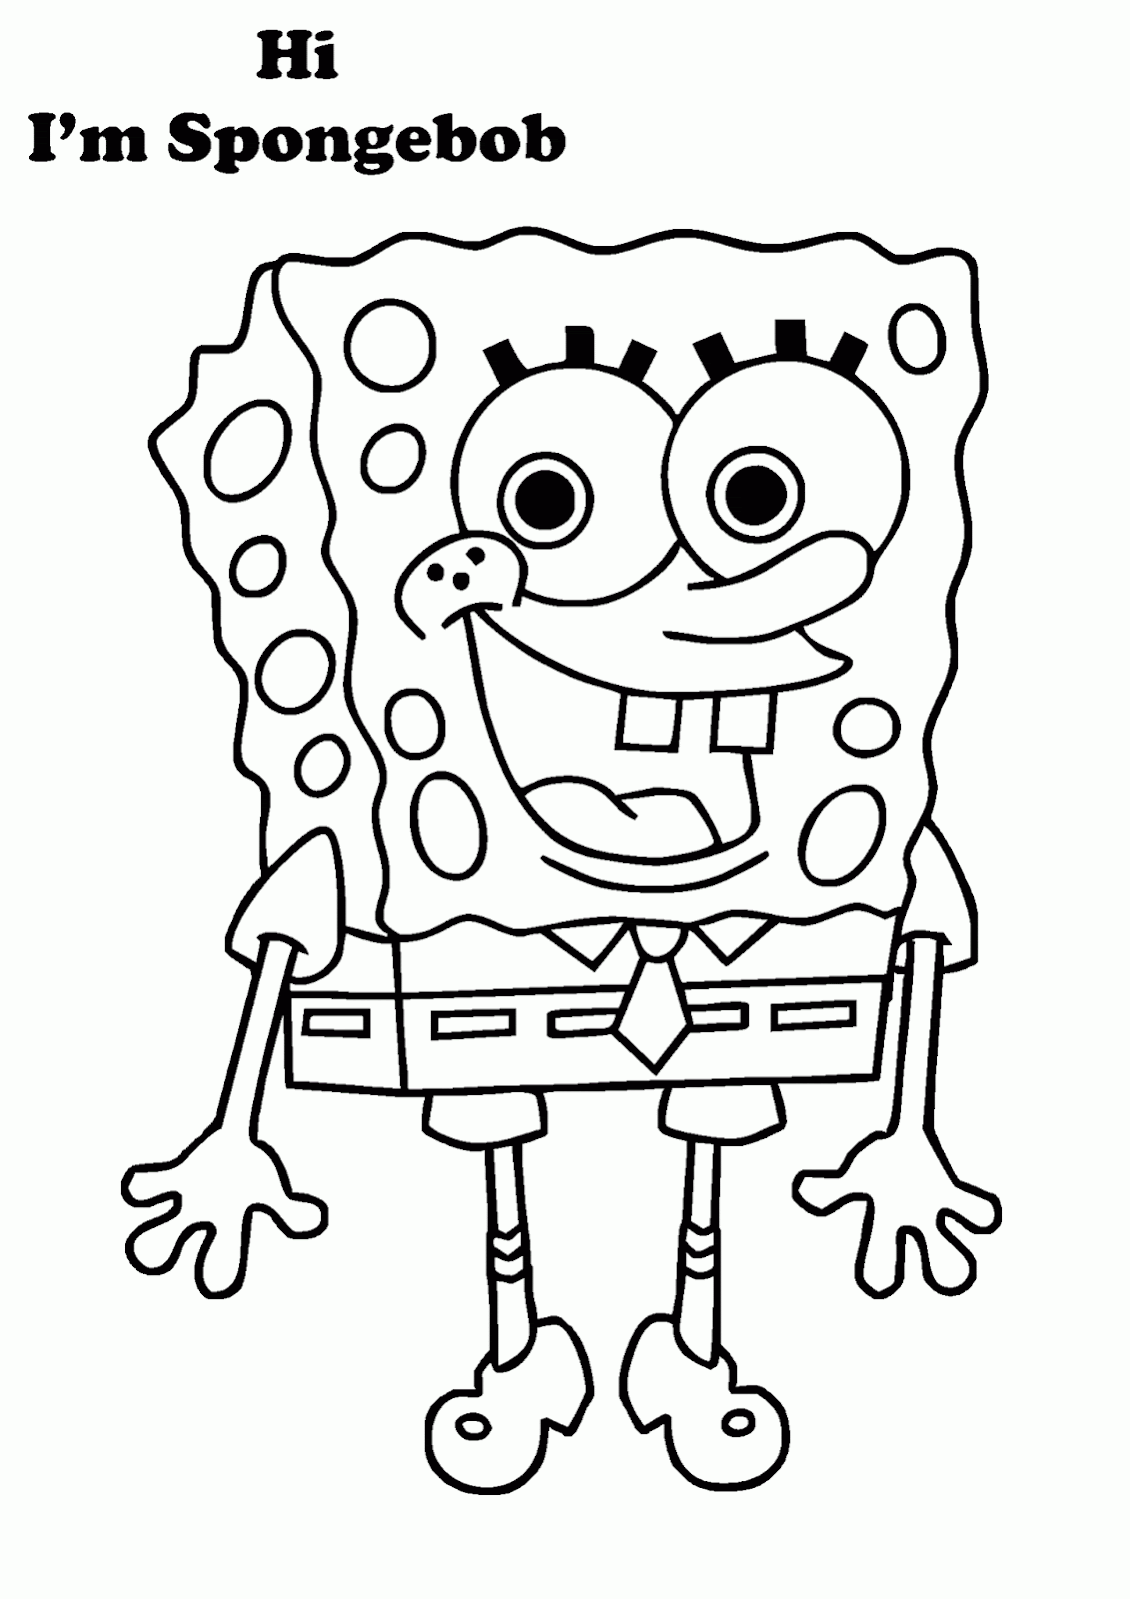 60 Paling Keren Gambar Spongebob Hitam Putih